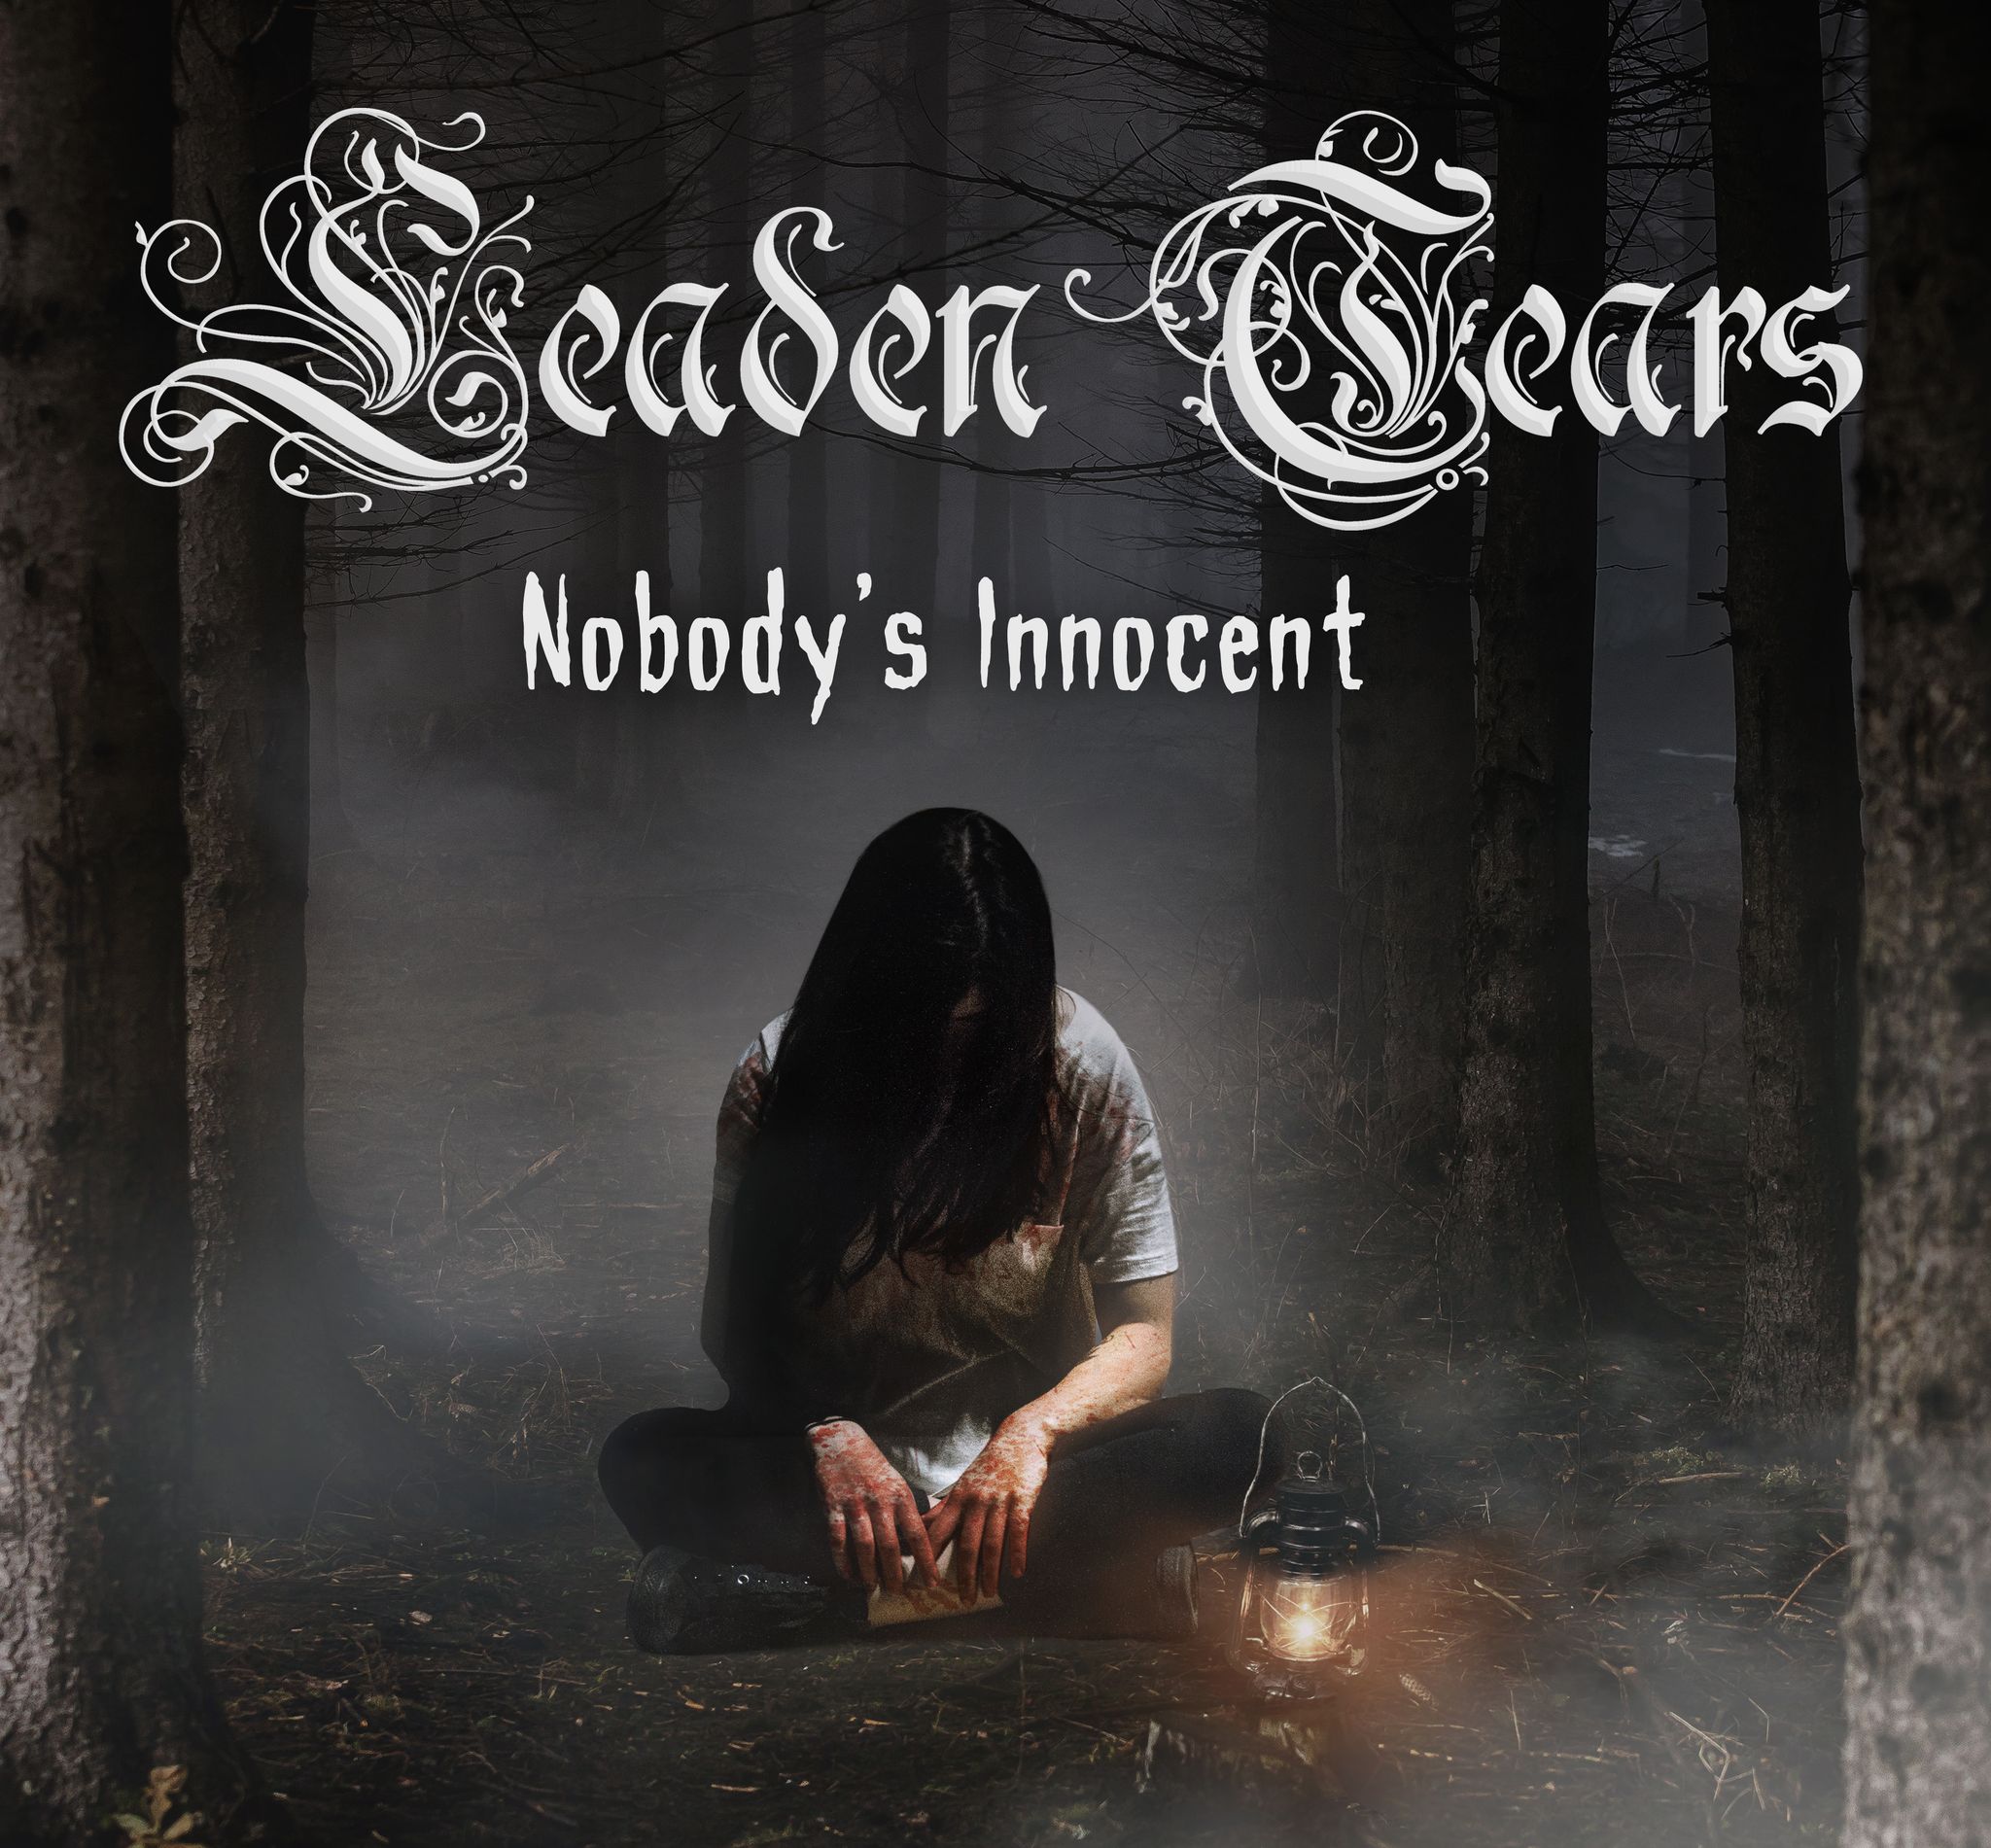 Leaden Tears – “Nobody’s Innocent”